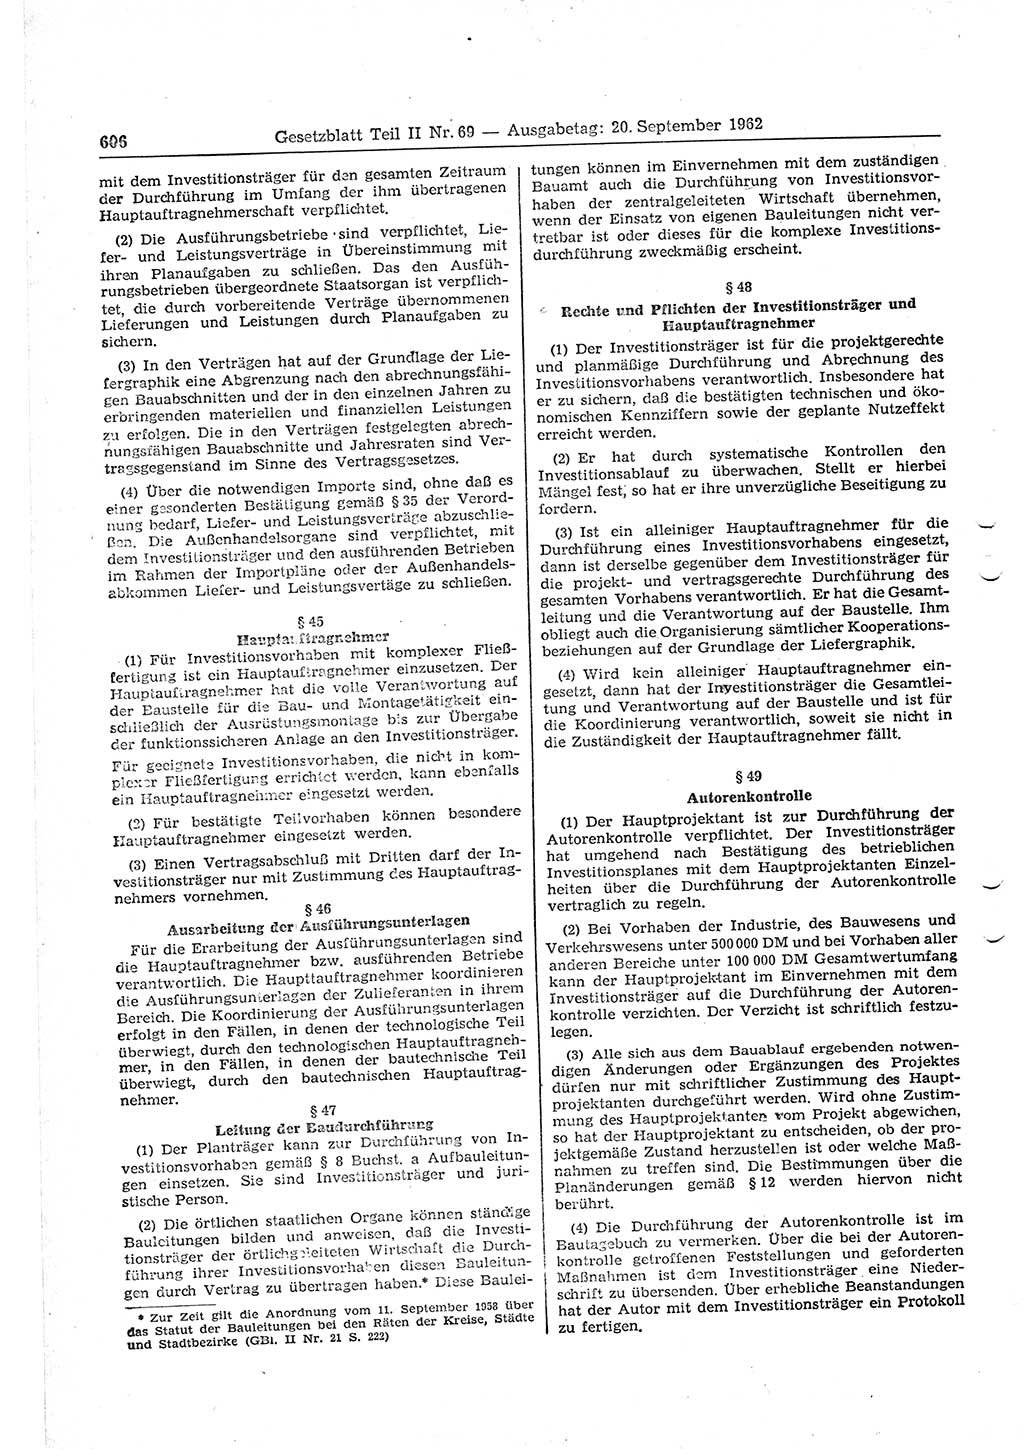 Gesetzblatt (GBl.) der Deutschen Demokratischen Republik (DDR) Teil ⅠⅠ 1962, Seite 606 (GBl. DDR ⅠⅠ 1962, S. 606)